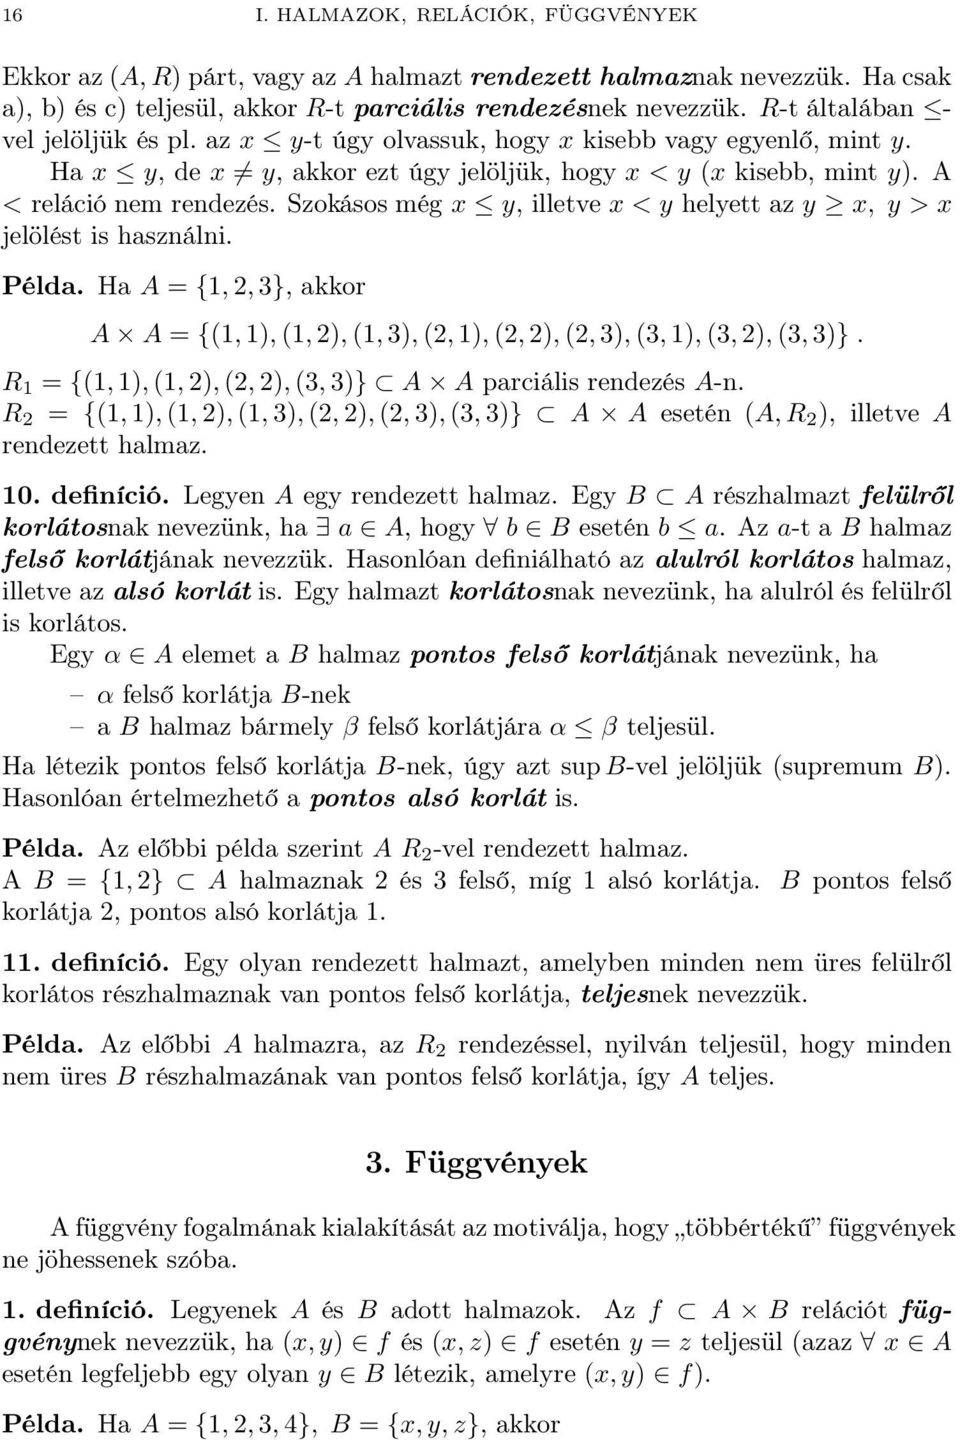 Gazdasági Matematika I. - PDF Ingyenes letöltés